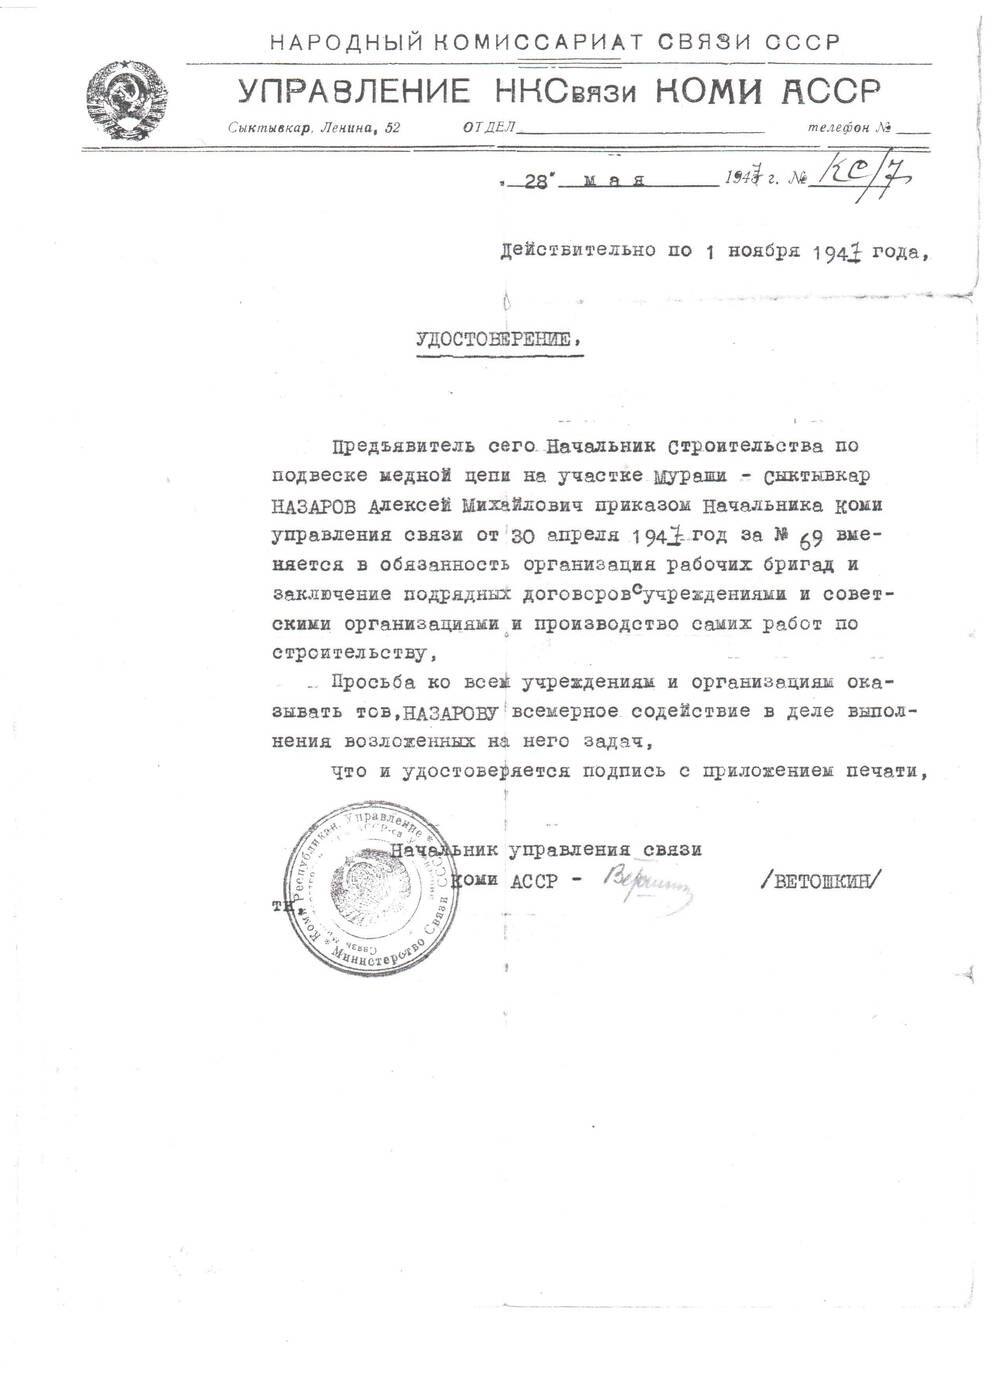 Ксерокопия Удостоверение Назарова А.М. от 28 мая 1947 г.